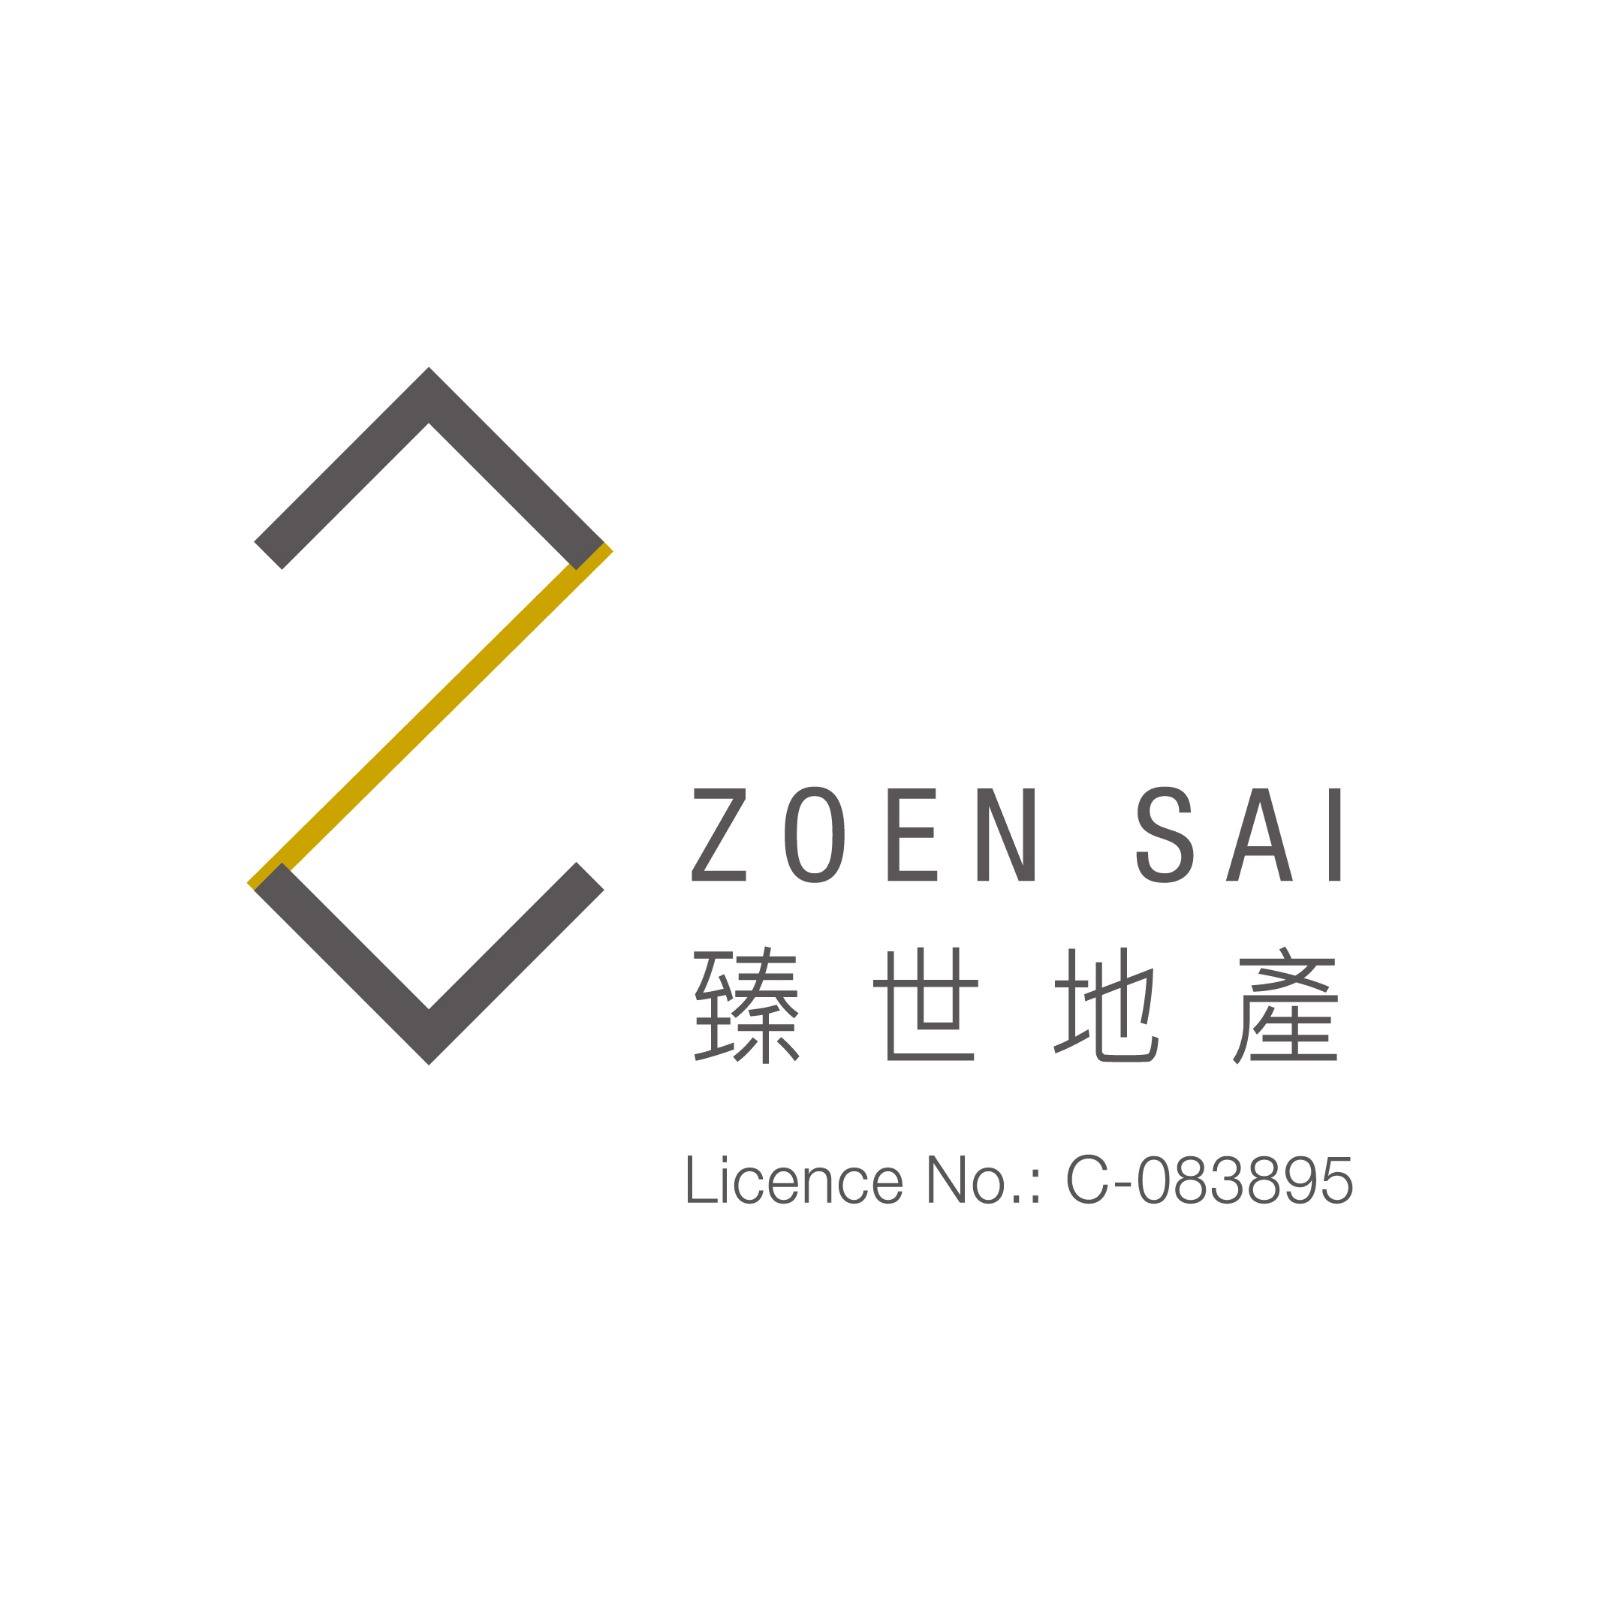 地產代理公司: Zoen Sai Property 臻世地產